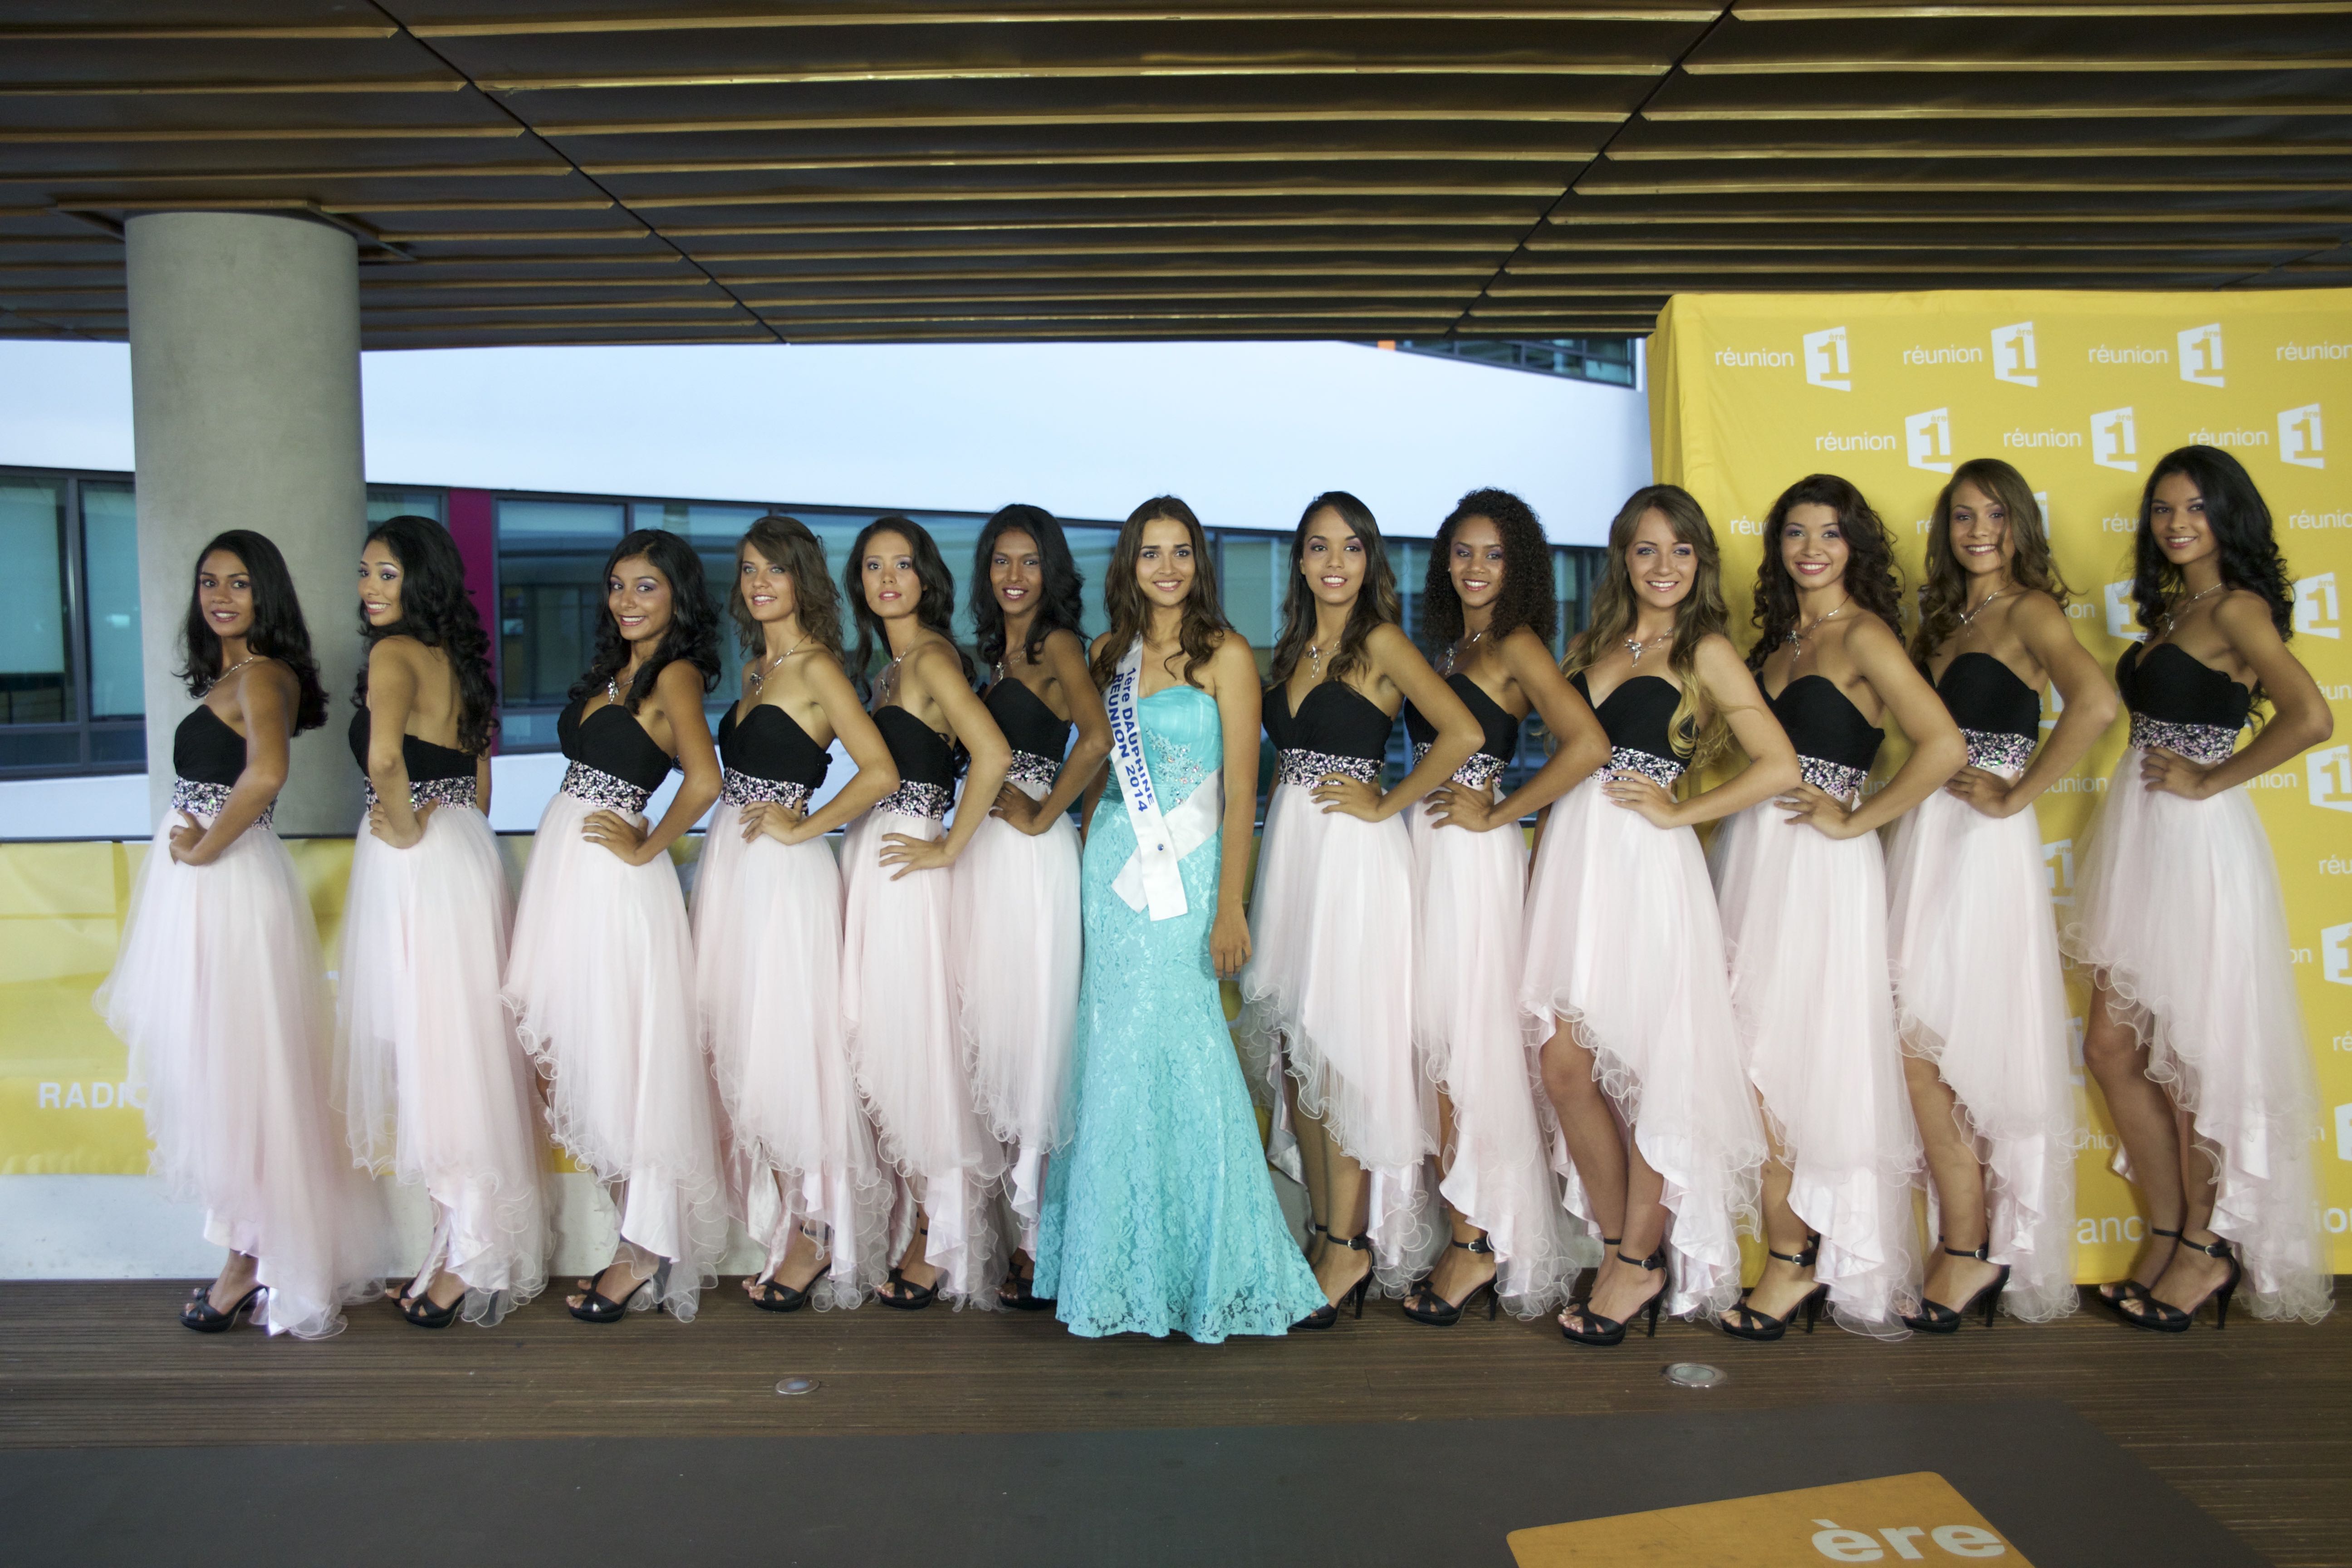 Les 12 candidates entourent Anne-Gaëlle Laterrière, 1ère dauphine de Miss Réunion 2014